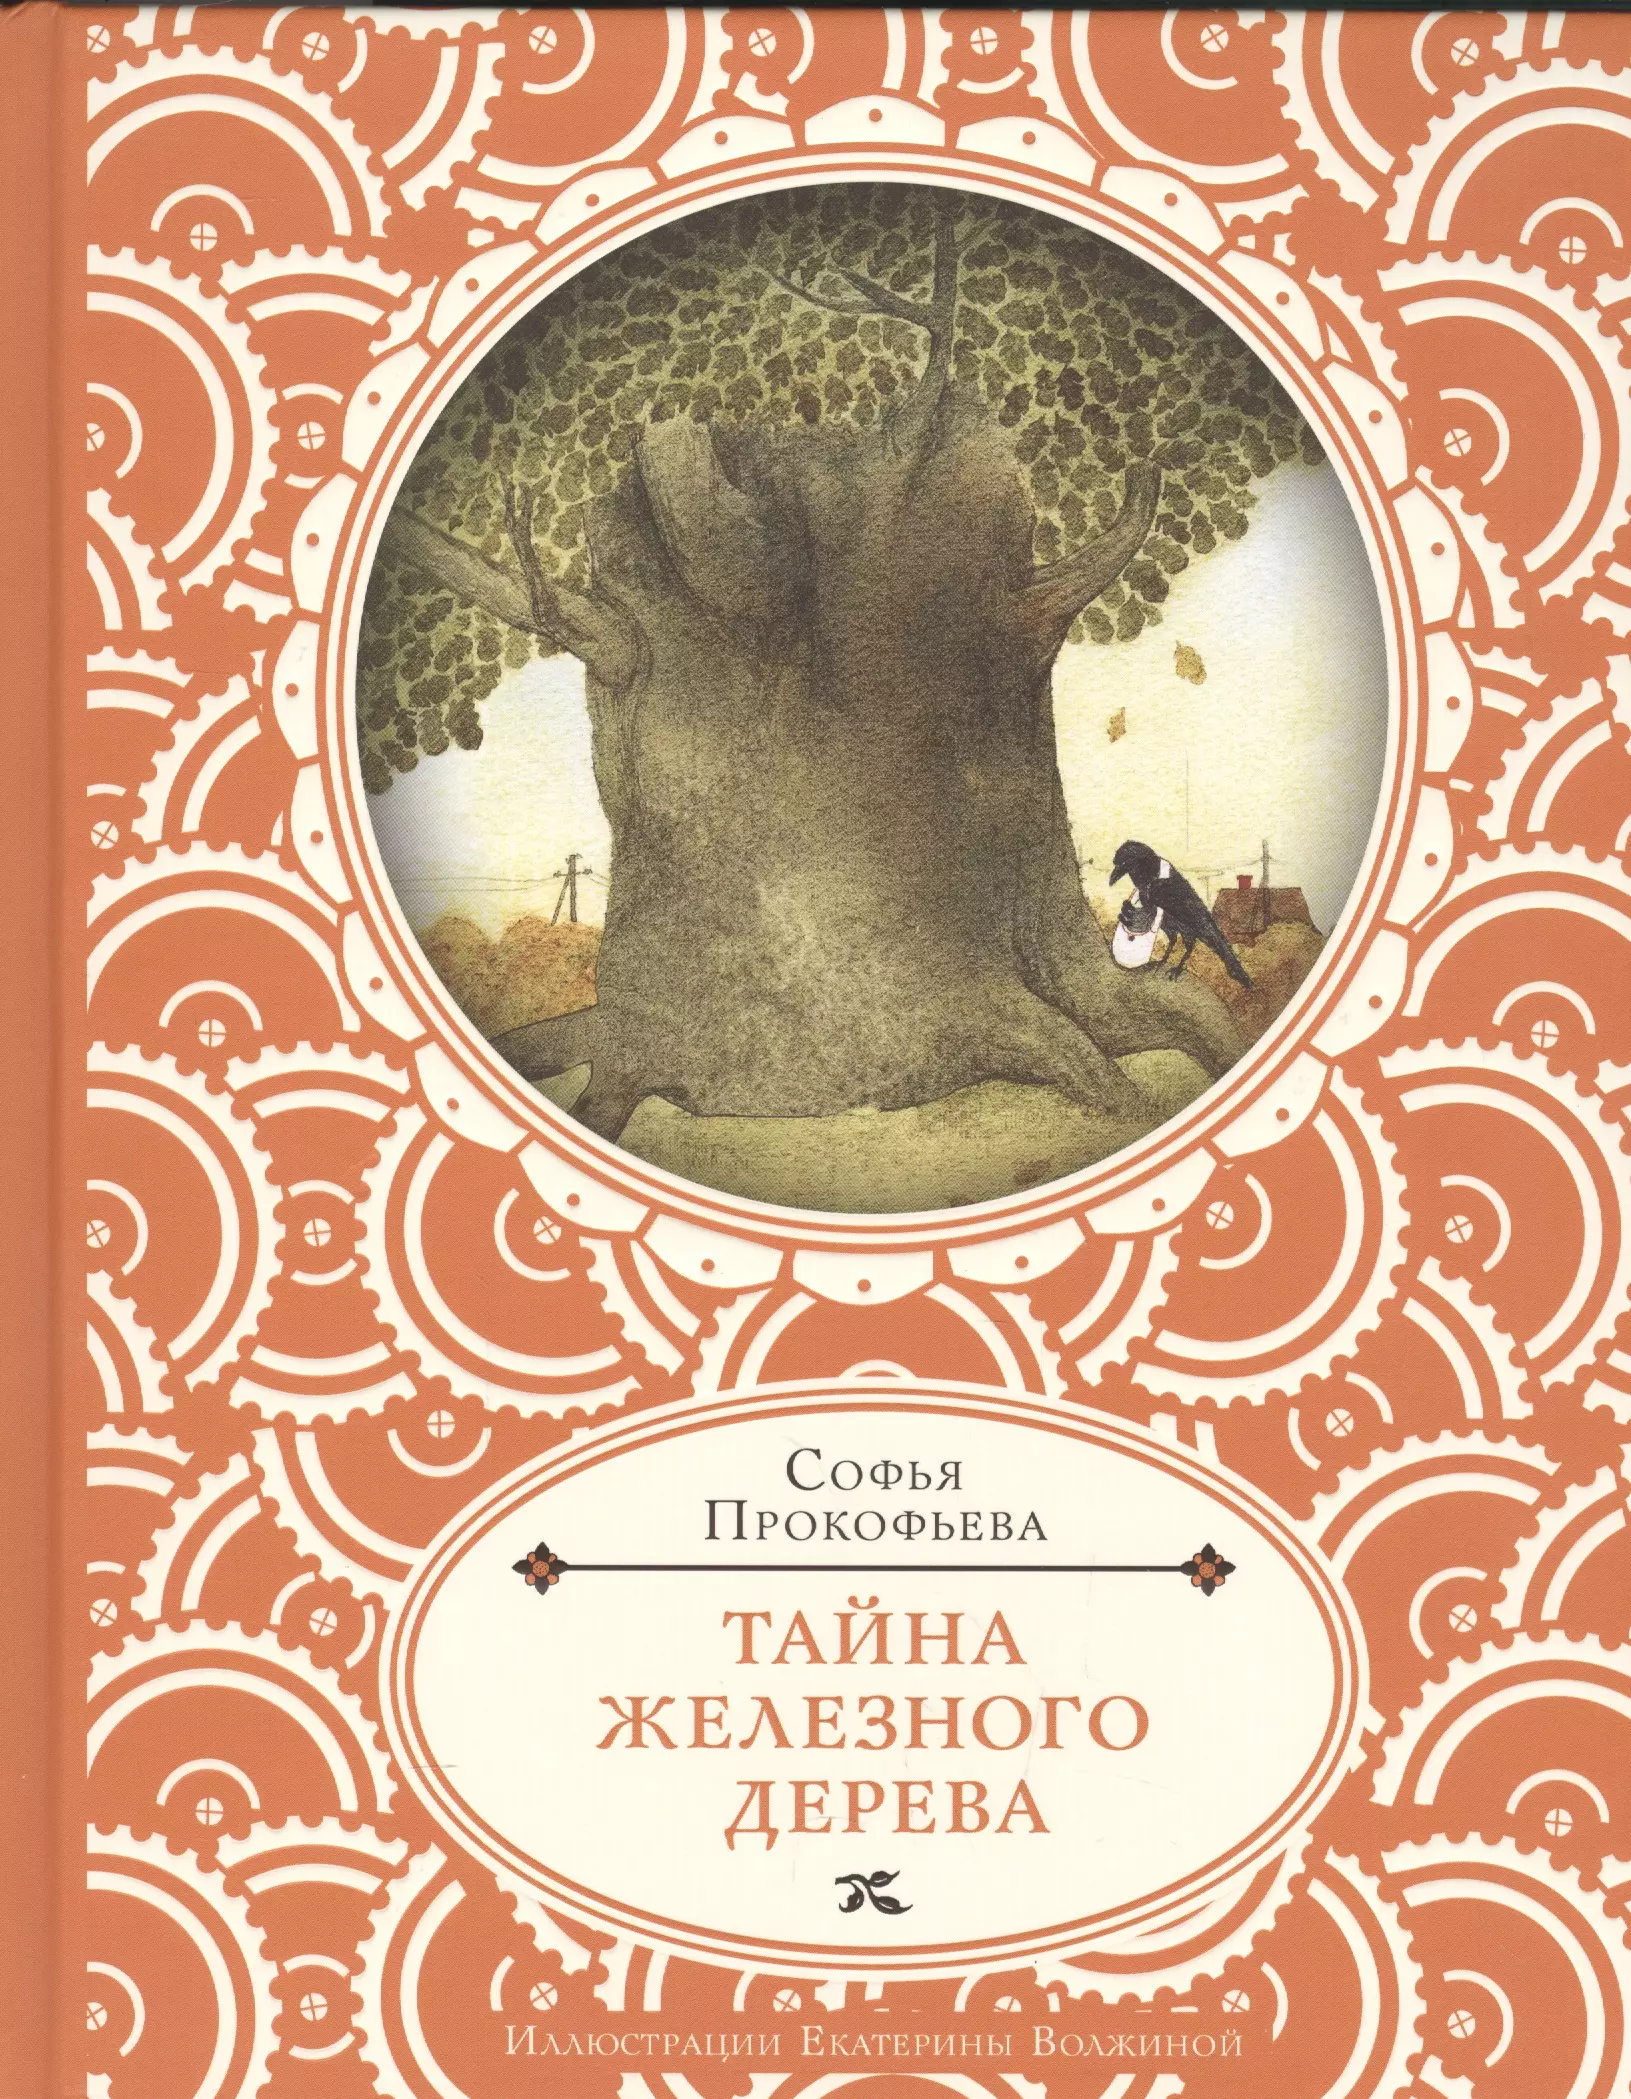 Тайны деревьев книга. Прокофьева тайна железного дерева. Тайна железного дерева книга. Книга тайна деревьев.